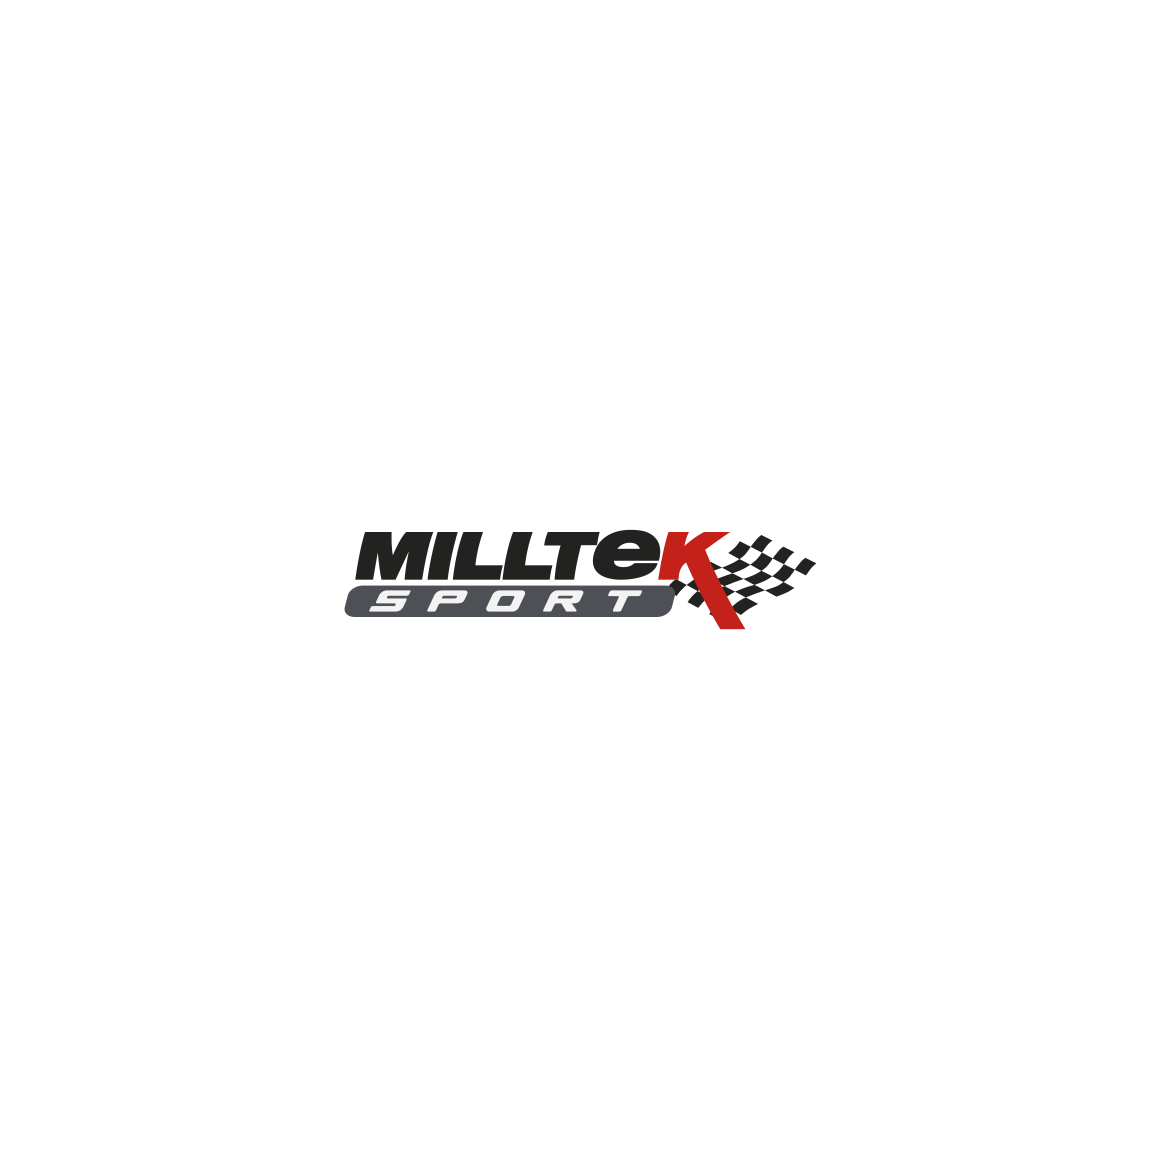 Milltek - Seat Leon - Stancesupply